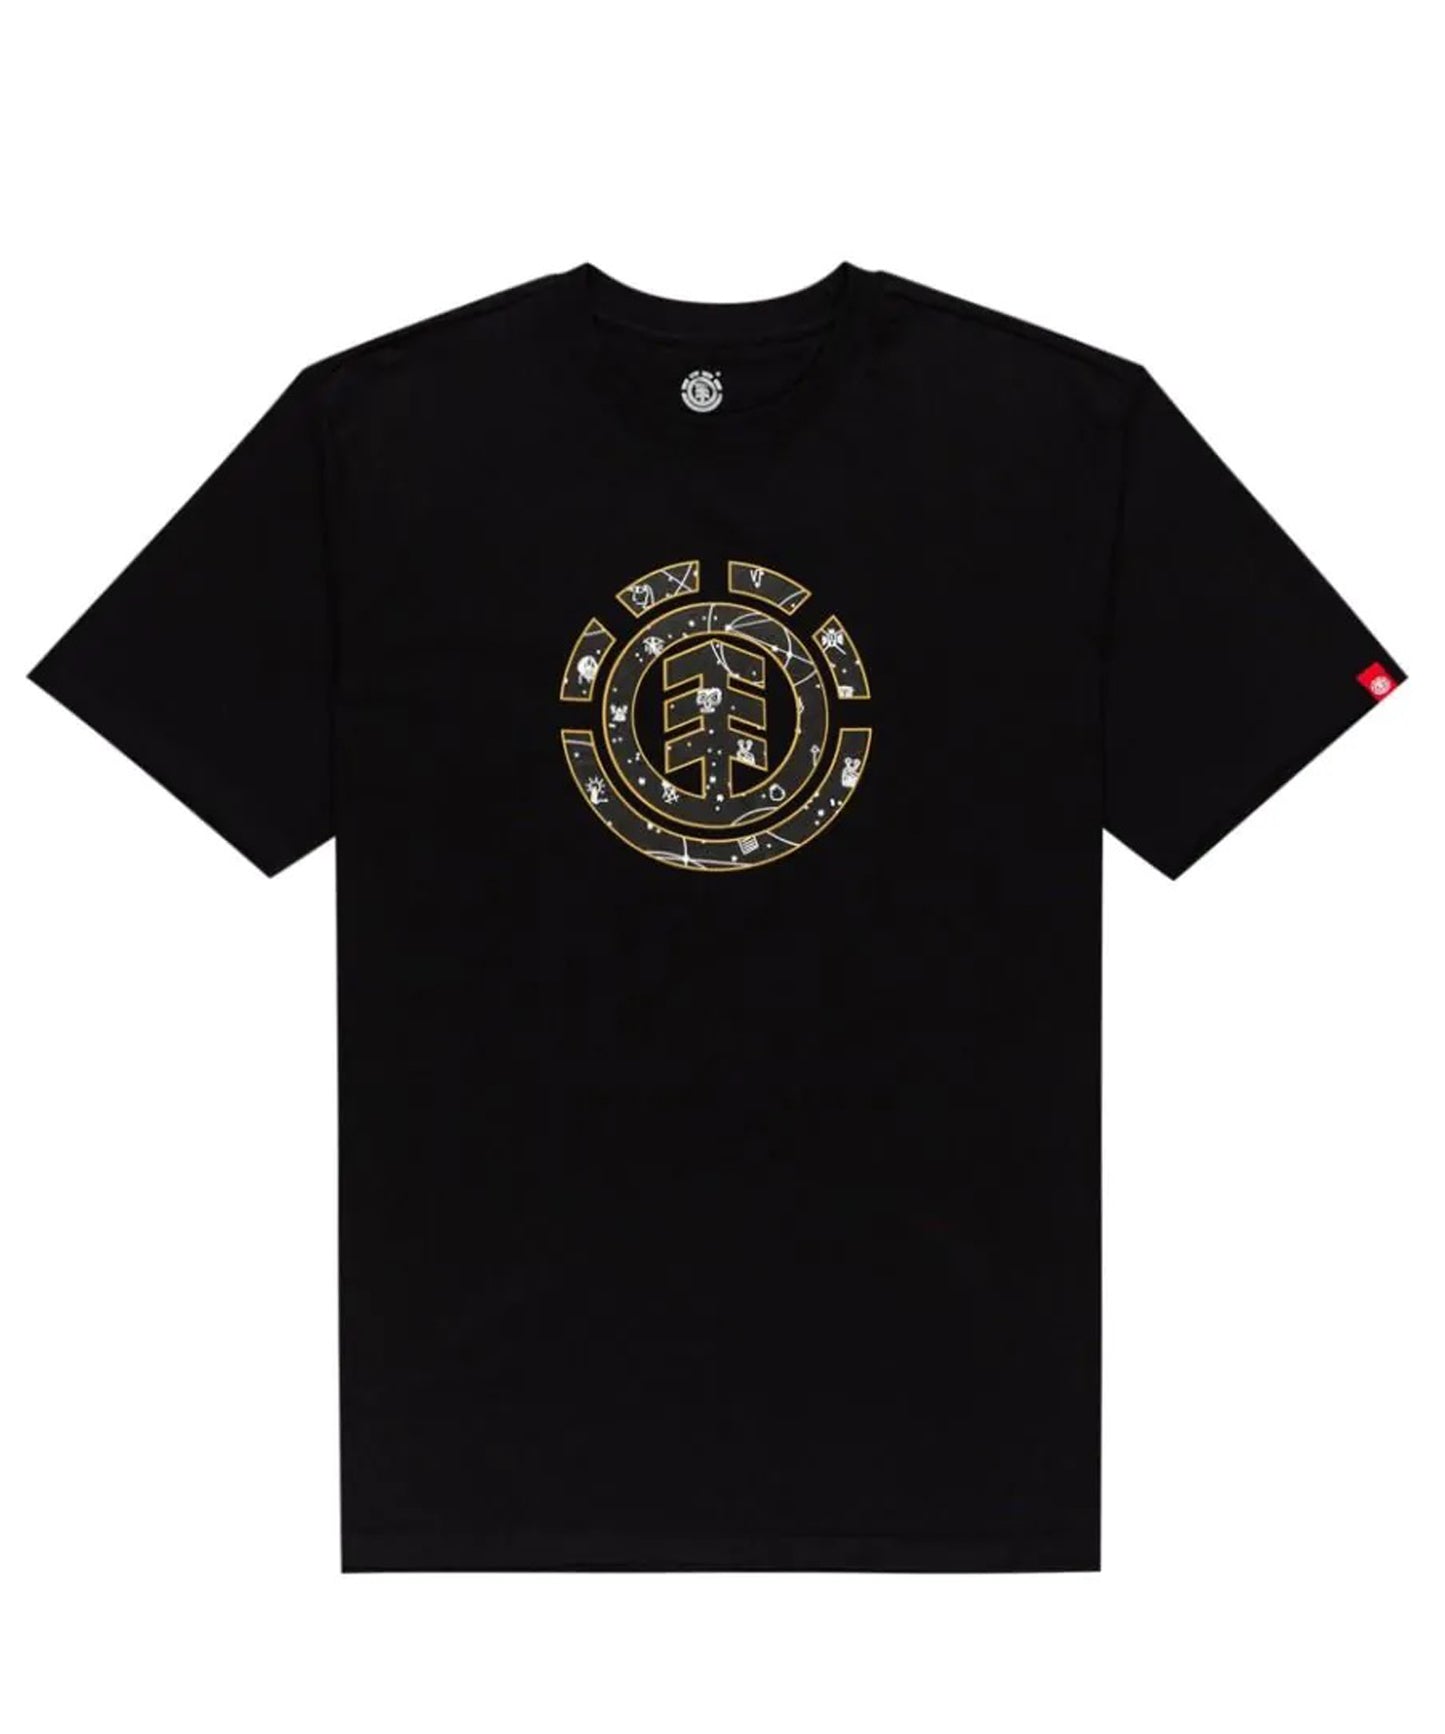 element youth-camiseta para chicos cookie galaxi-color negro-algodón 160grs-logo en el pecho.